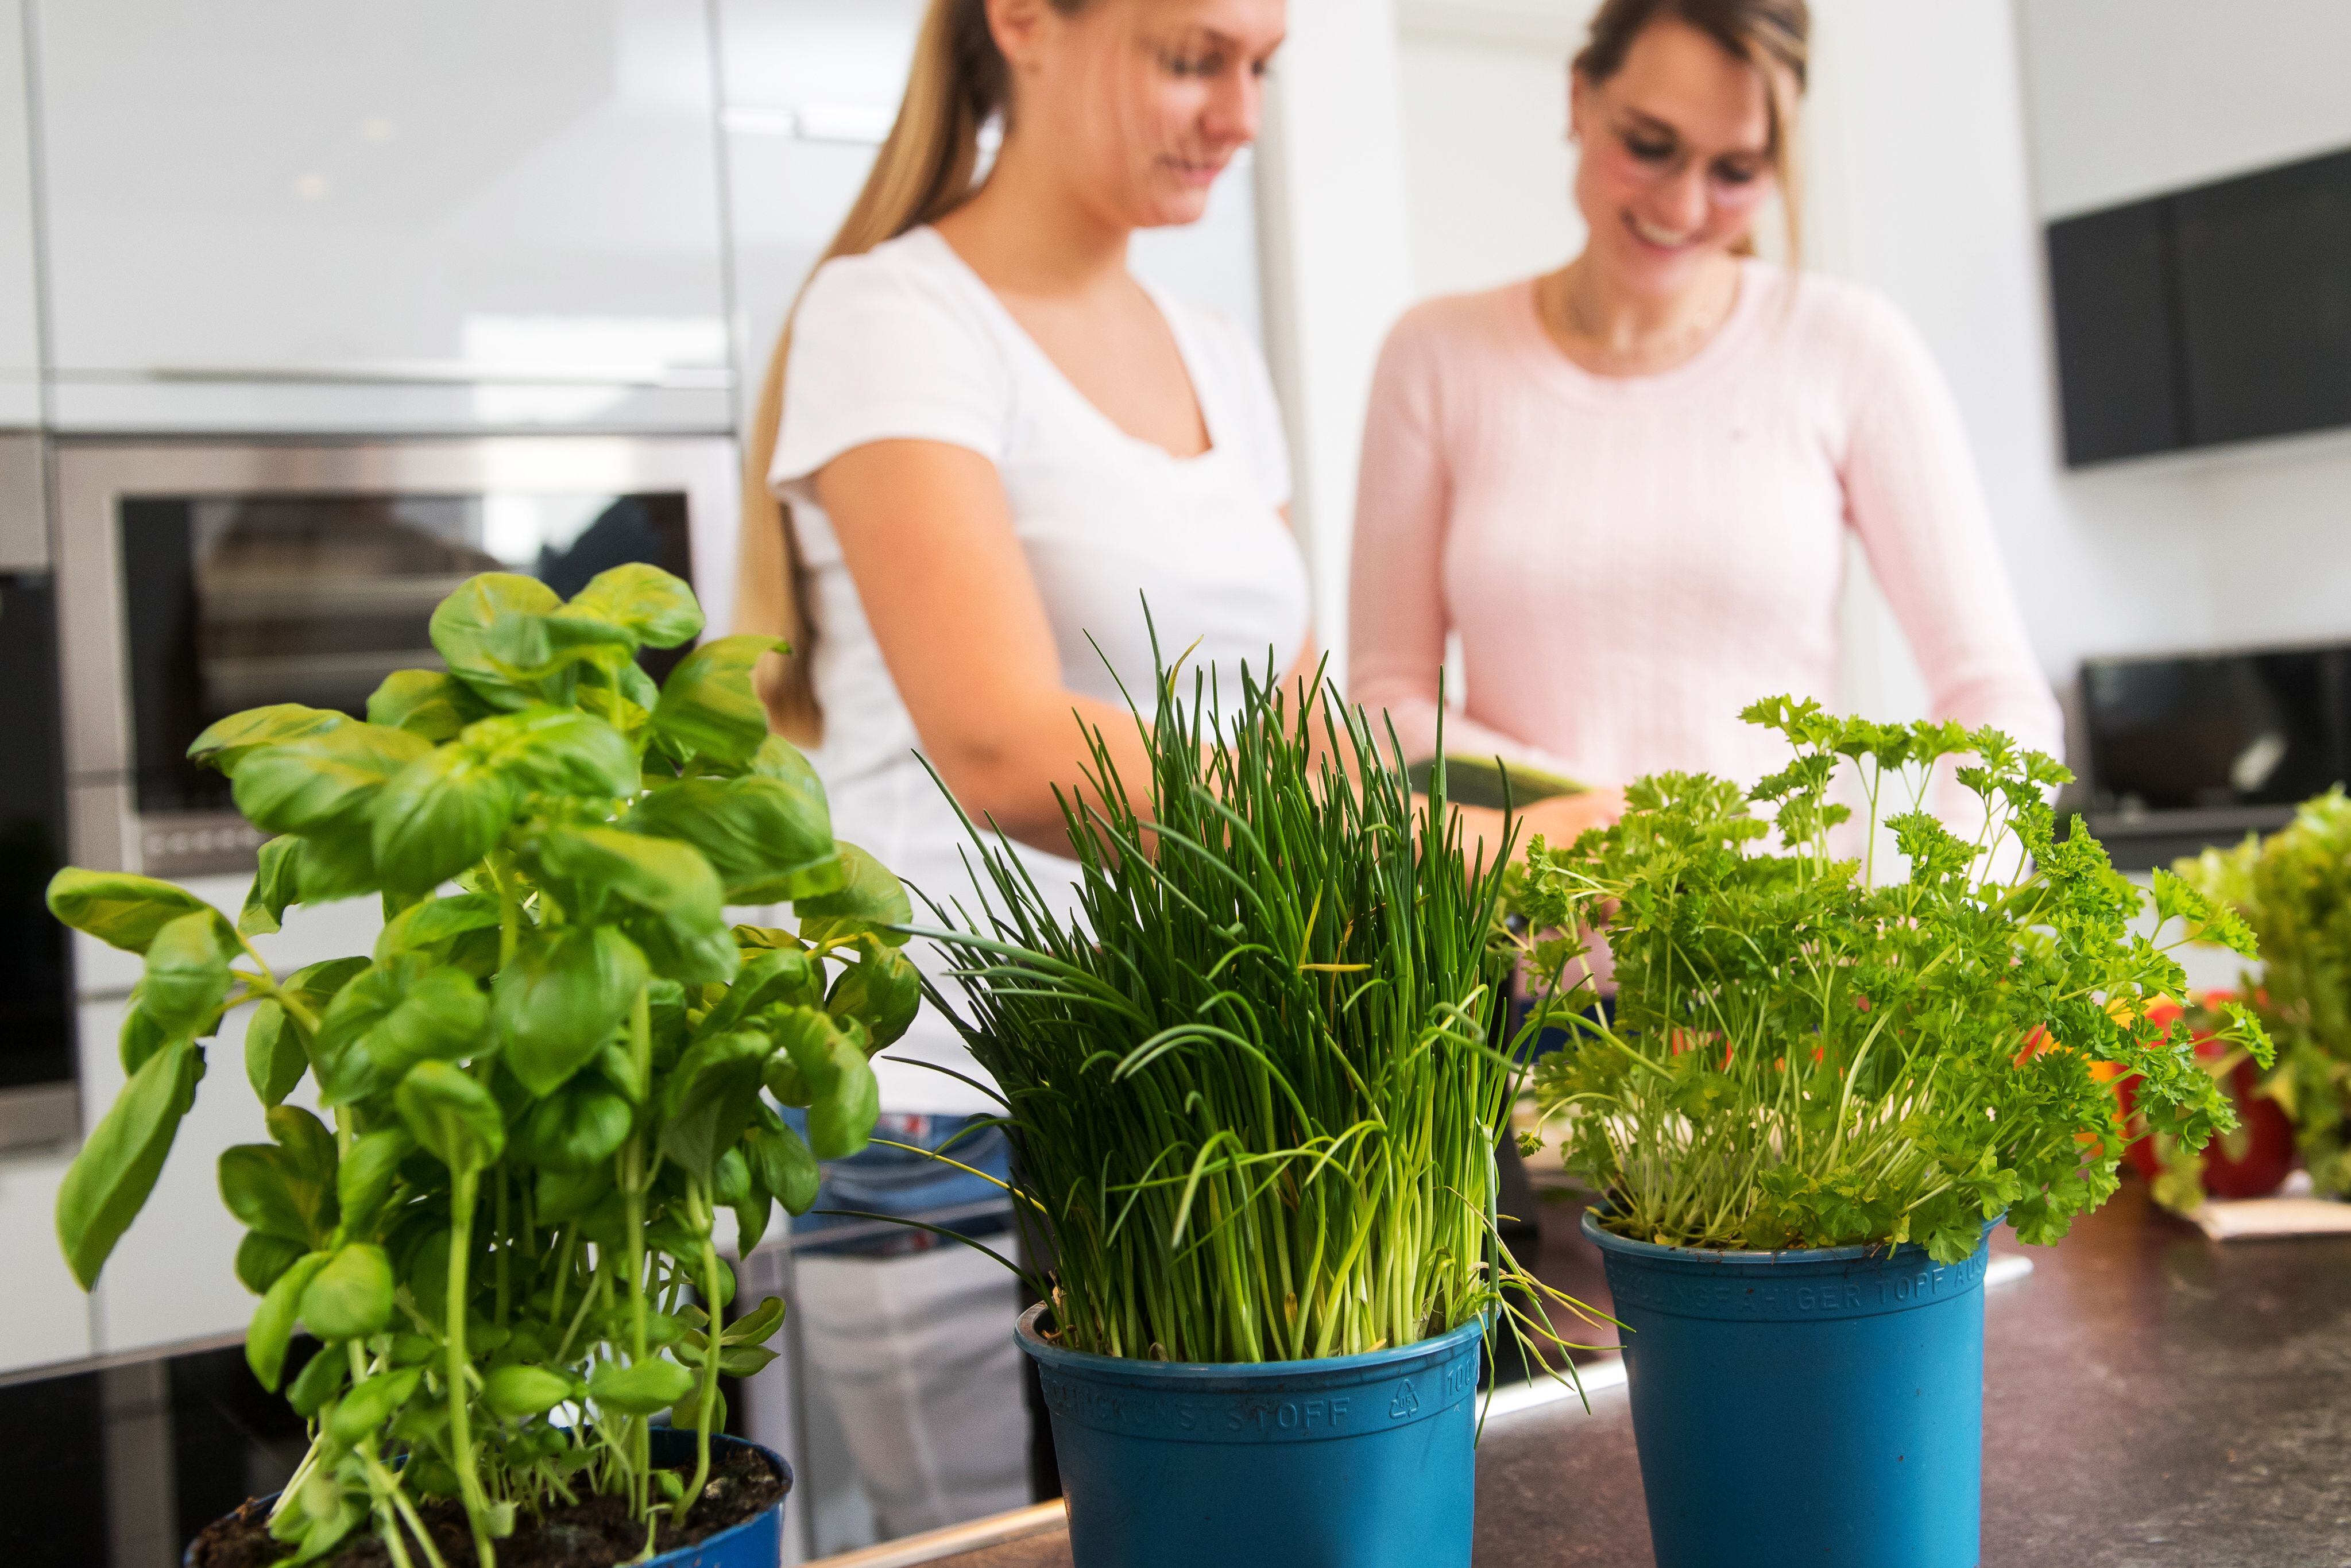 Las plantas aromáticas no solo sirven para cocinar, también pueden crecer muy bien en la cocina y ser un elemento decorativo, además de útil.